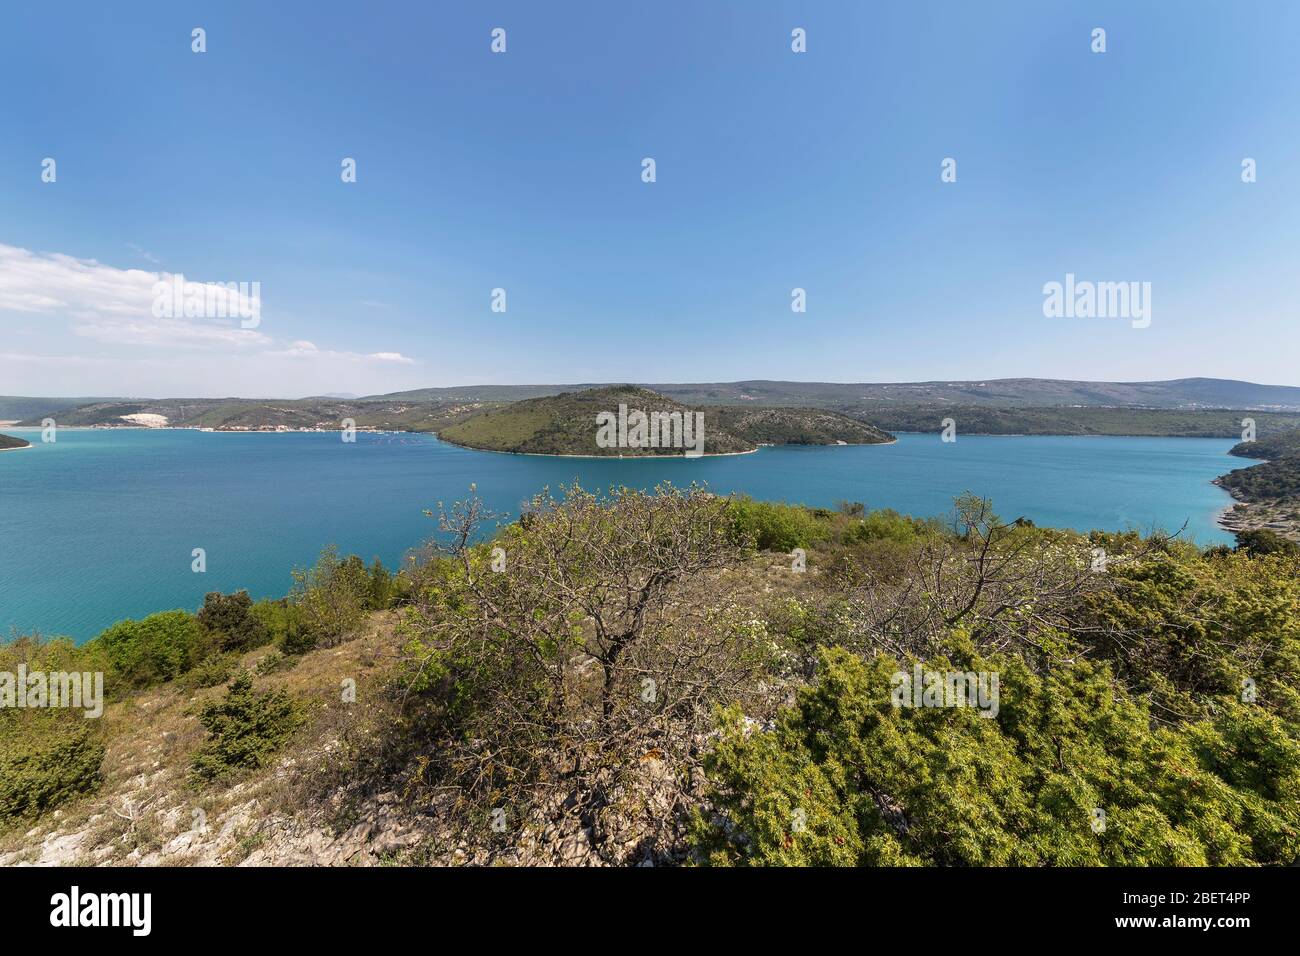 Blick auf die Bucht Rasa von einem Hügel, die Bucht ist 12 km lang und 1 km breit, Istrien, Kroatien Stockfoto